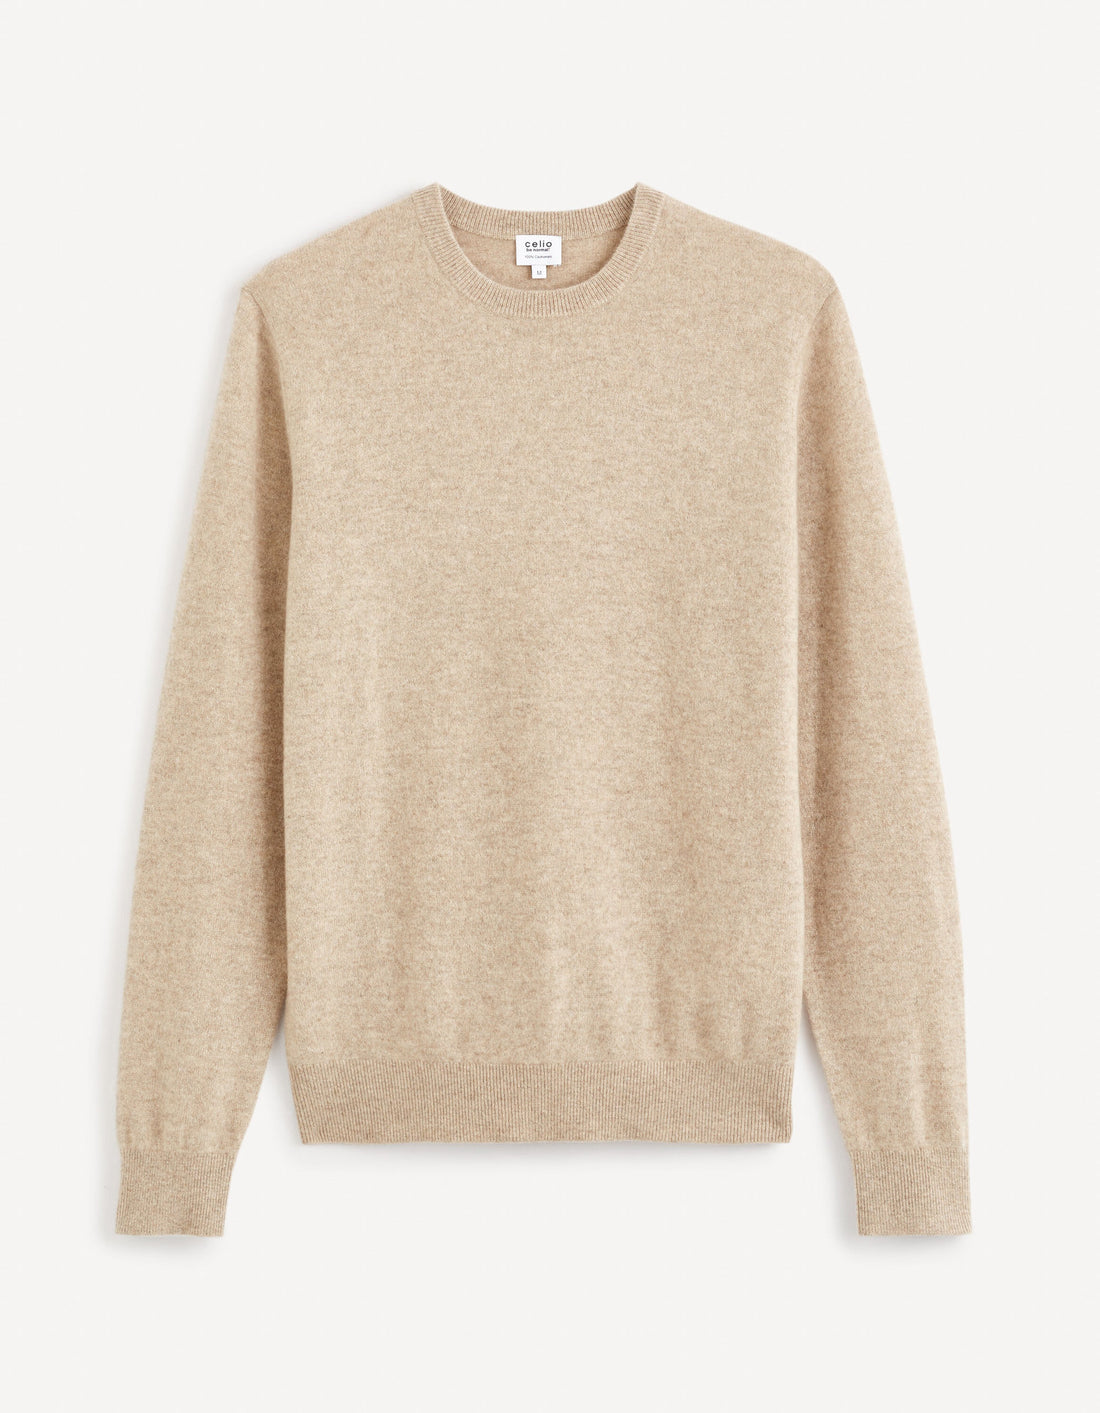 Round Neck Sweater 100% Cashmere_JECLOUD_BEIGE MEL_02